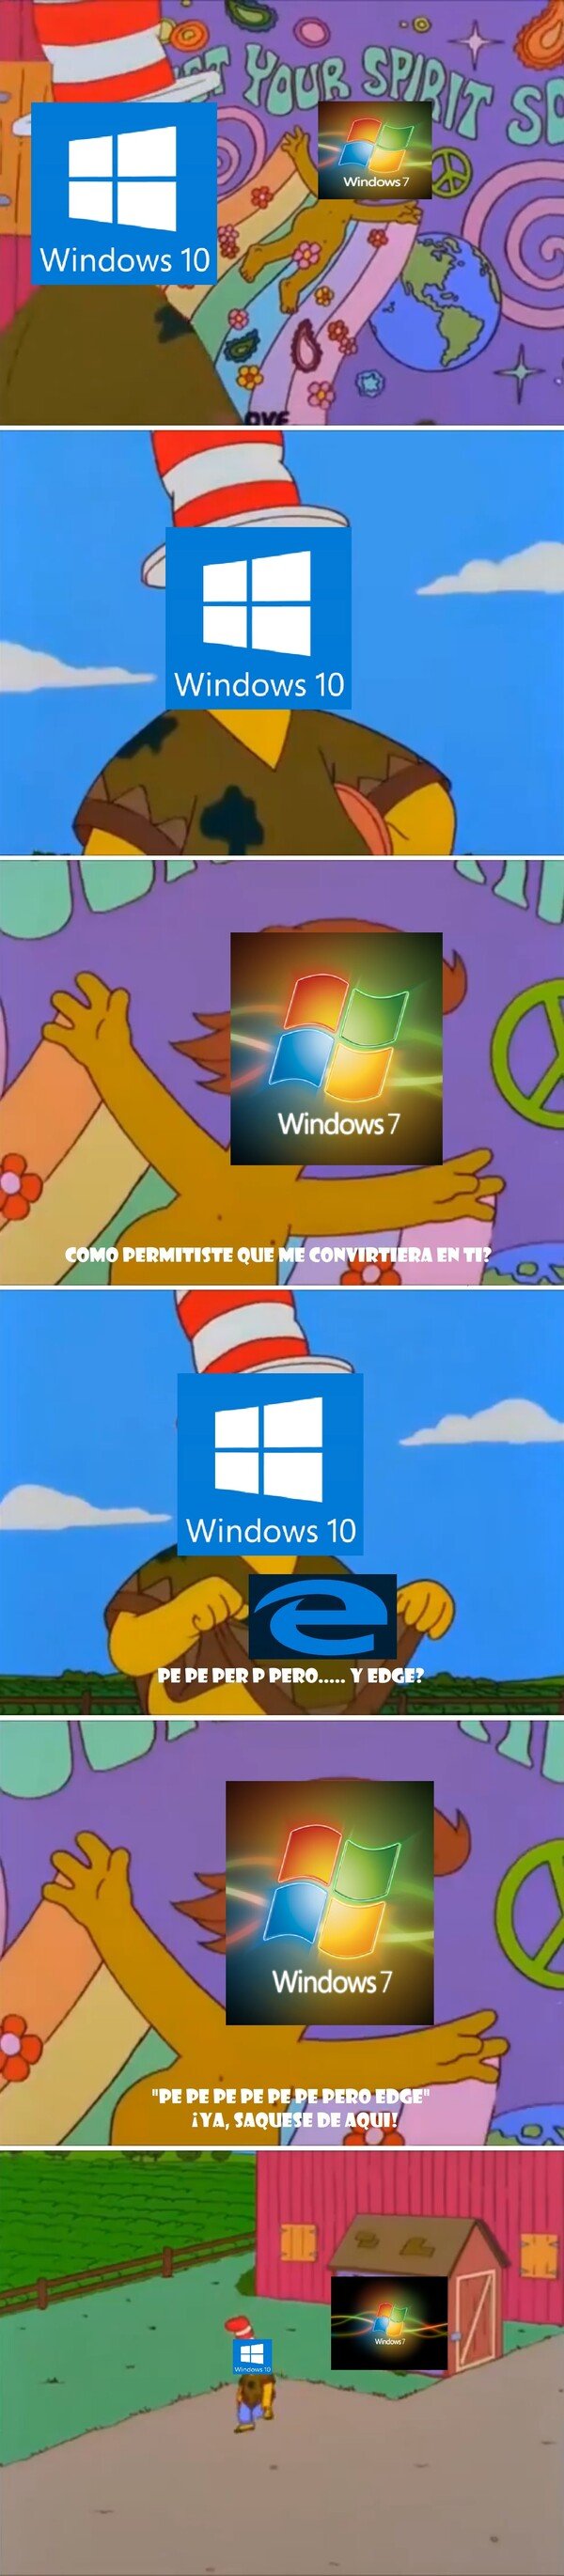 Meme_otros - ¿En qué se convirtió Windows 7?